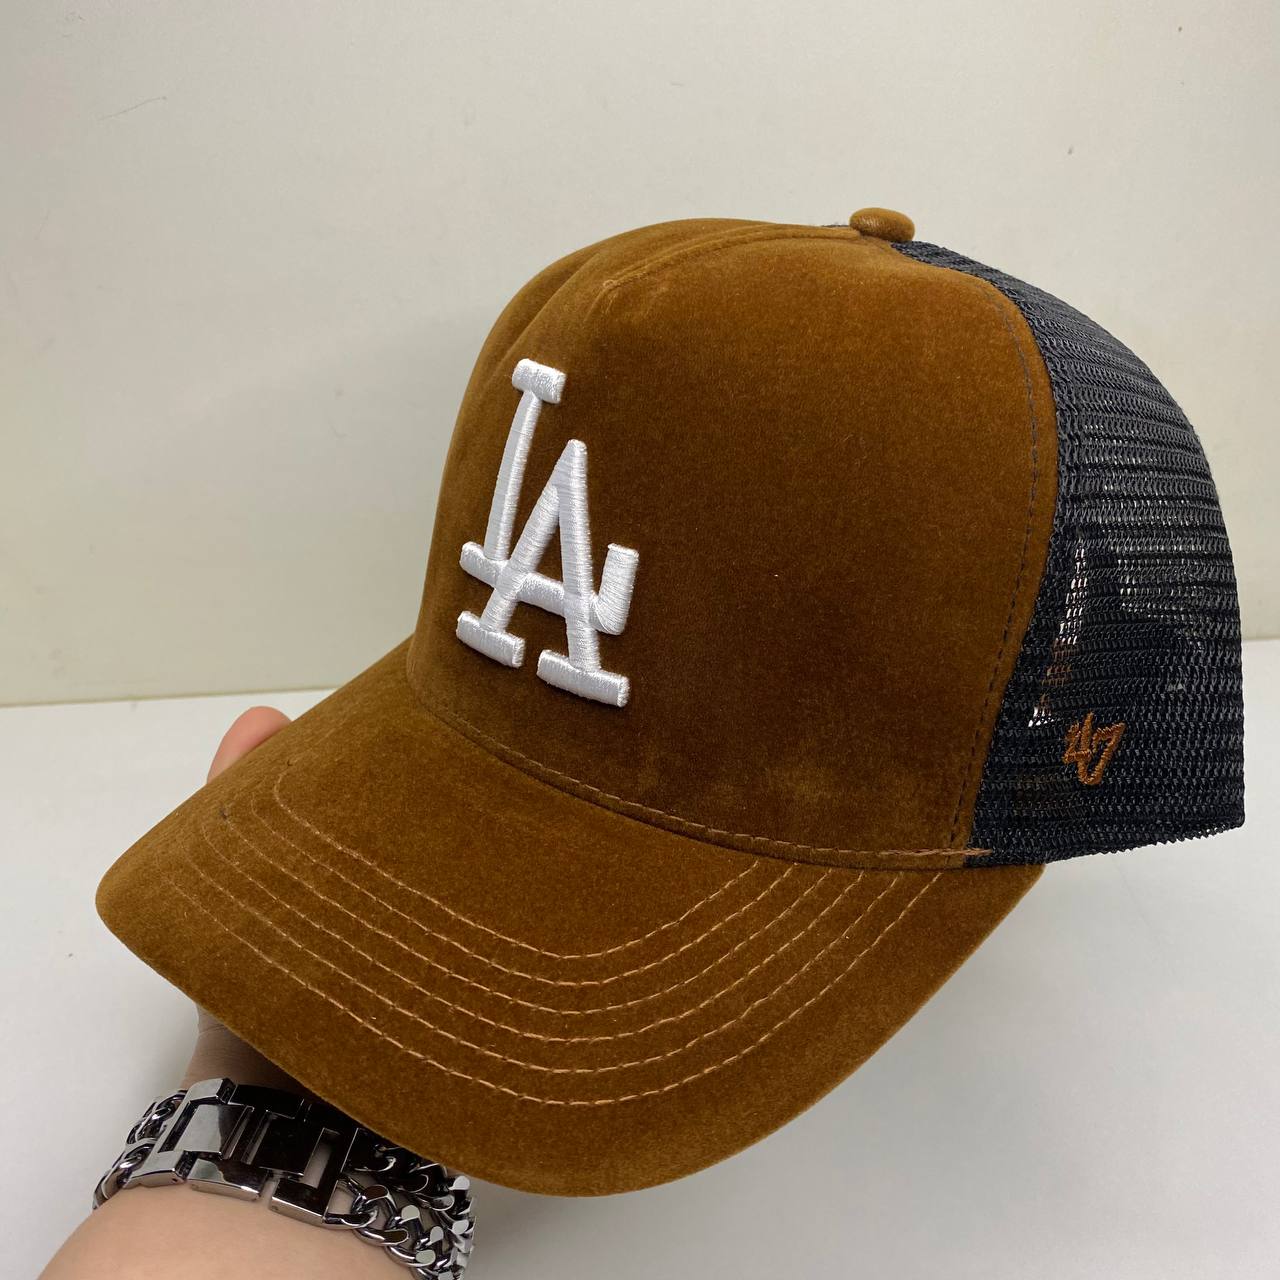 کلاه کپ LA (لس آنجلس)